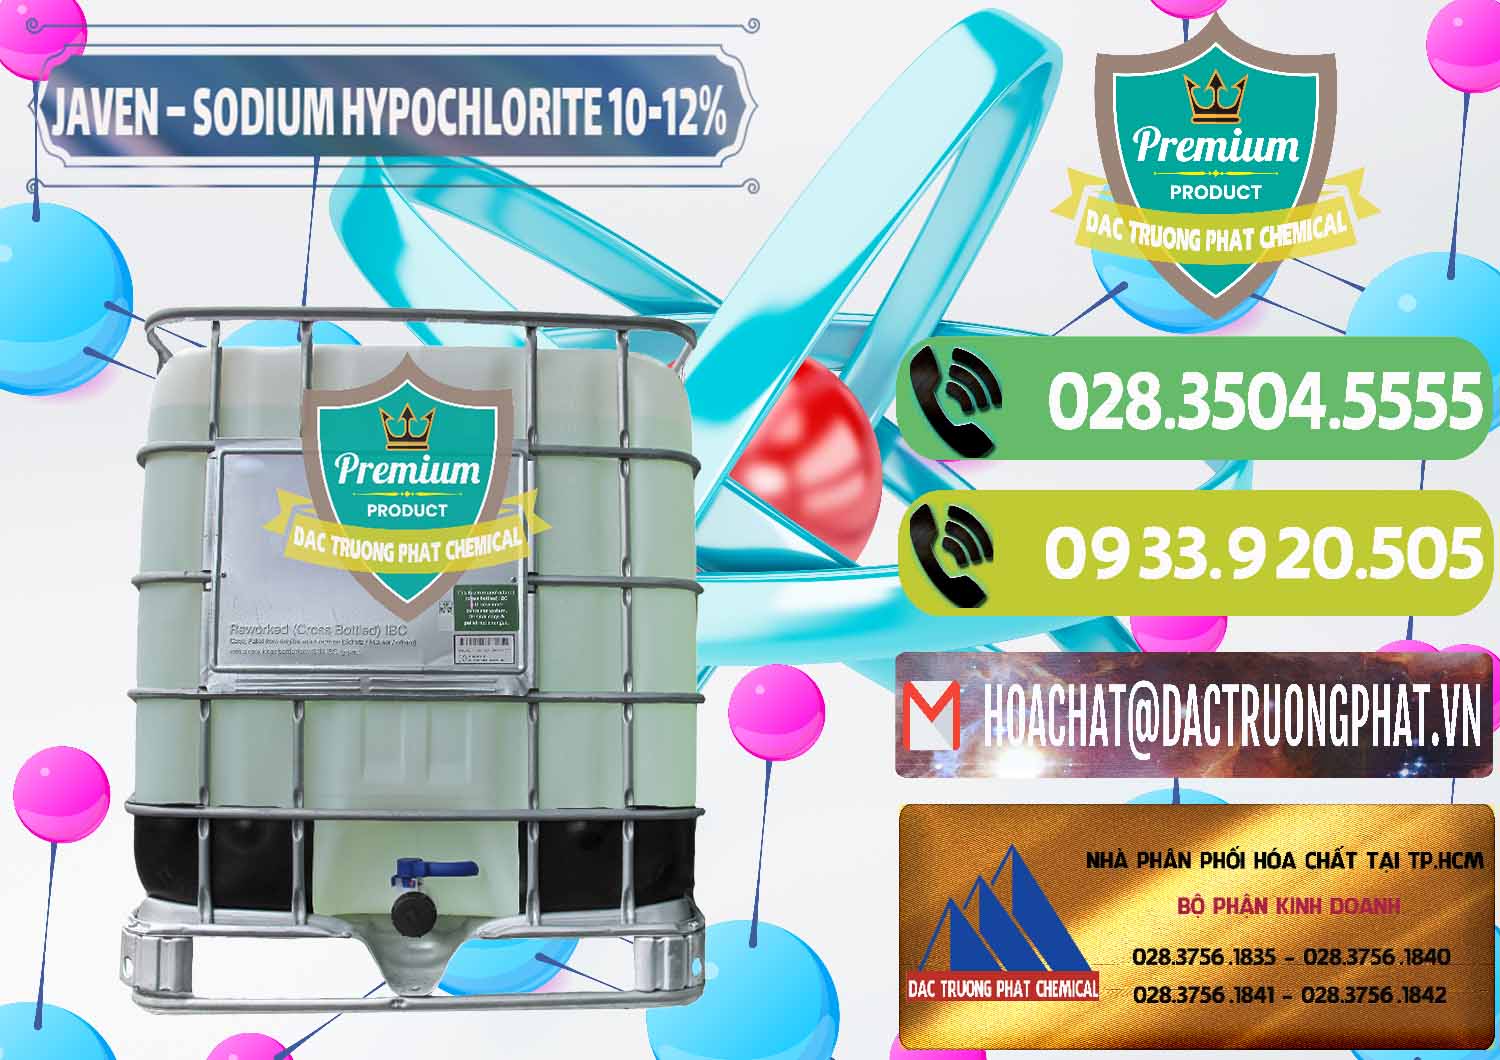 Cung cấp Javen - Sodium Hypochlorite 10-12% Việt Nam - 0188 - Kinh doanh _ phân phối hóa chất tại TP.HCM - hoachatmientay.vn